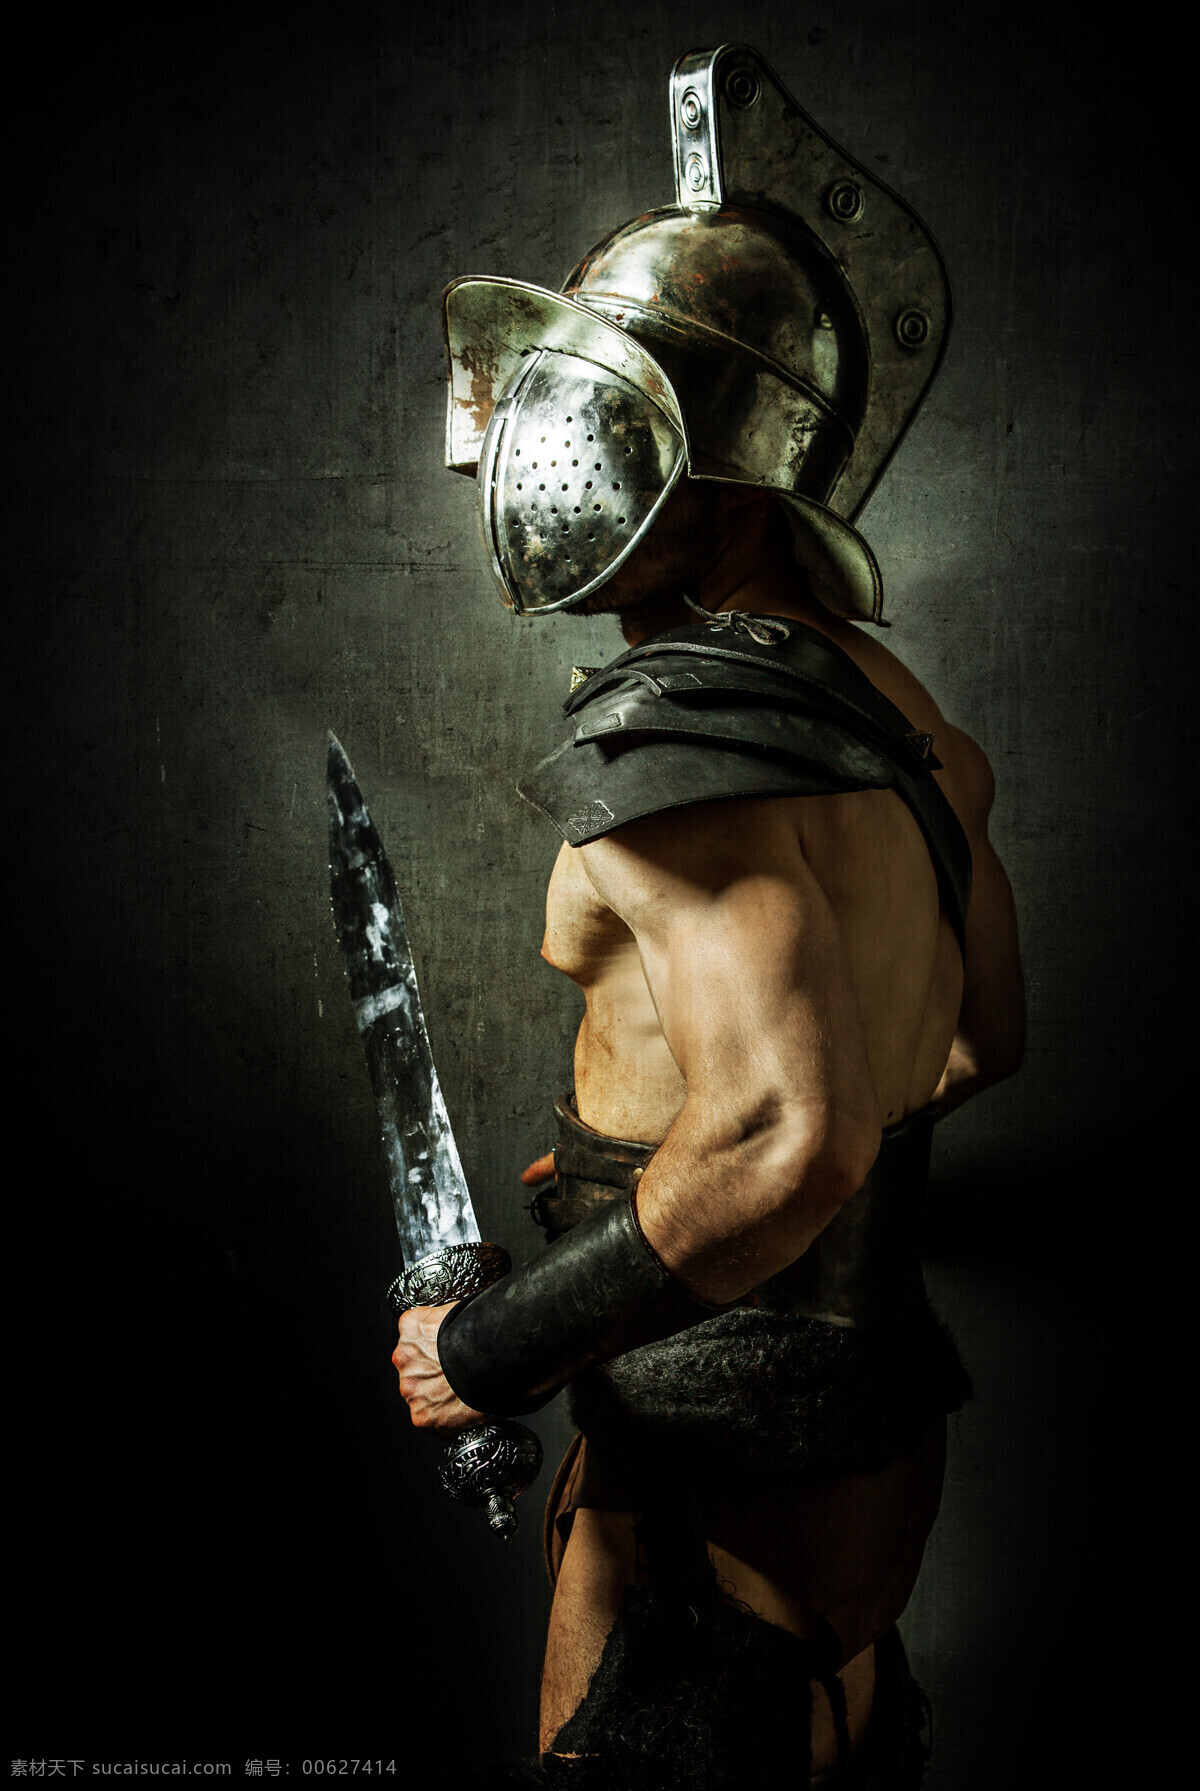 刀 带 面具 男人 侧面 武器 头盔 铠甲 战士 战争 男人男性 生活人物 人物图片